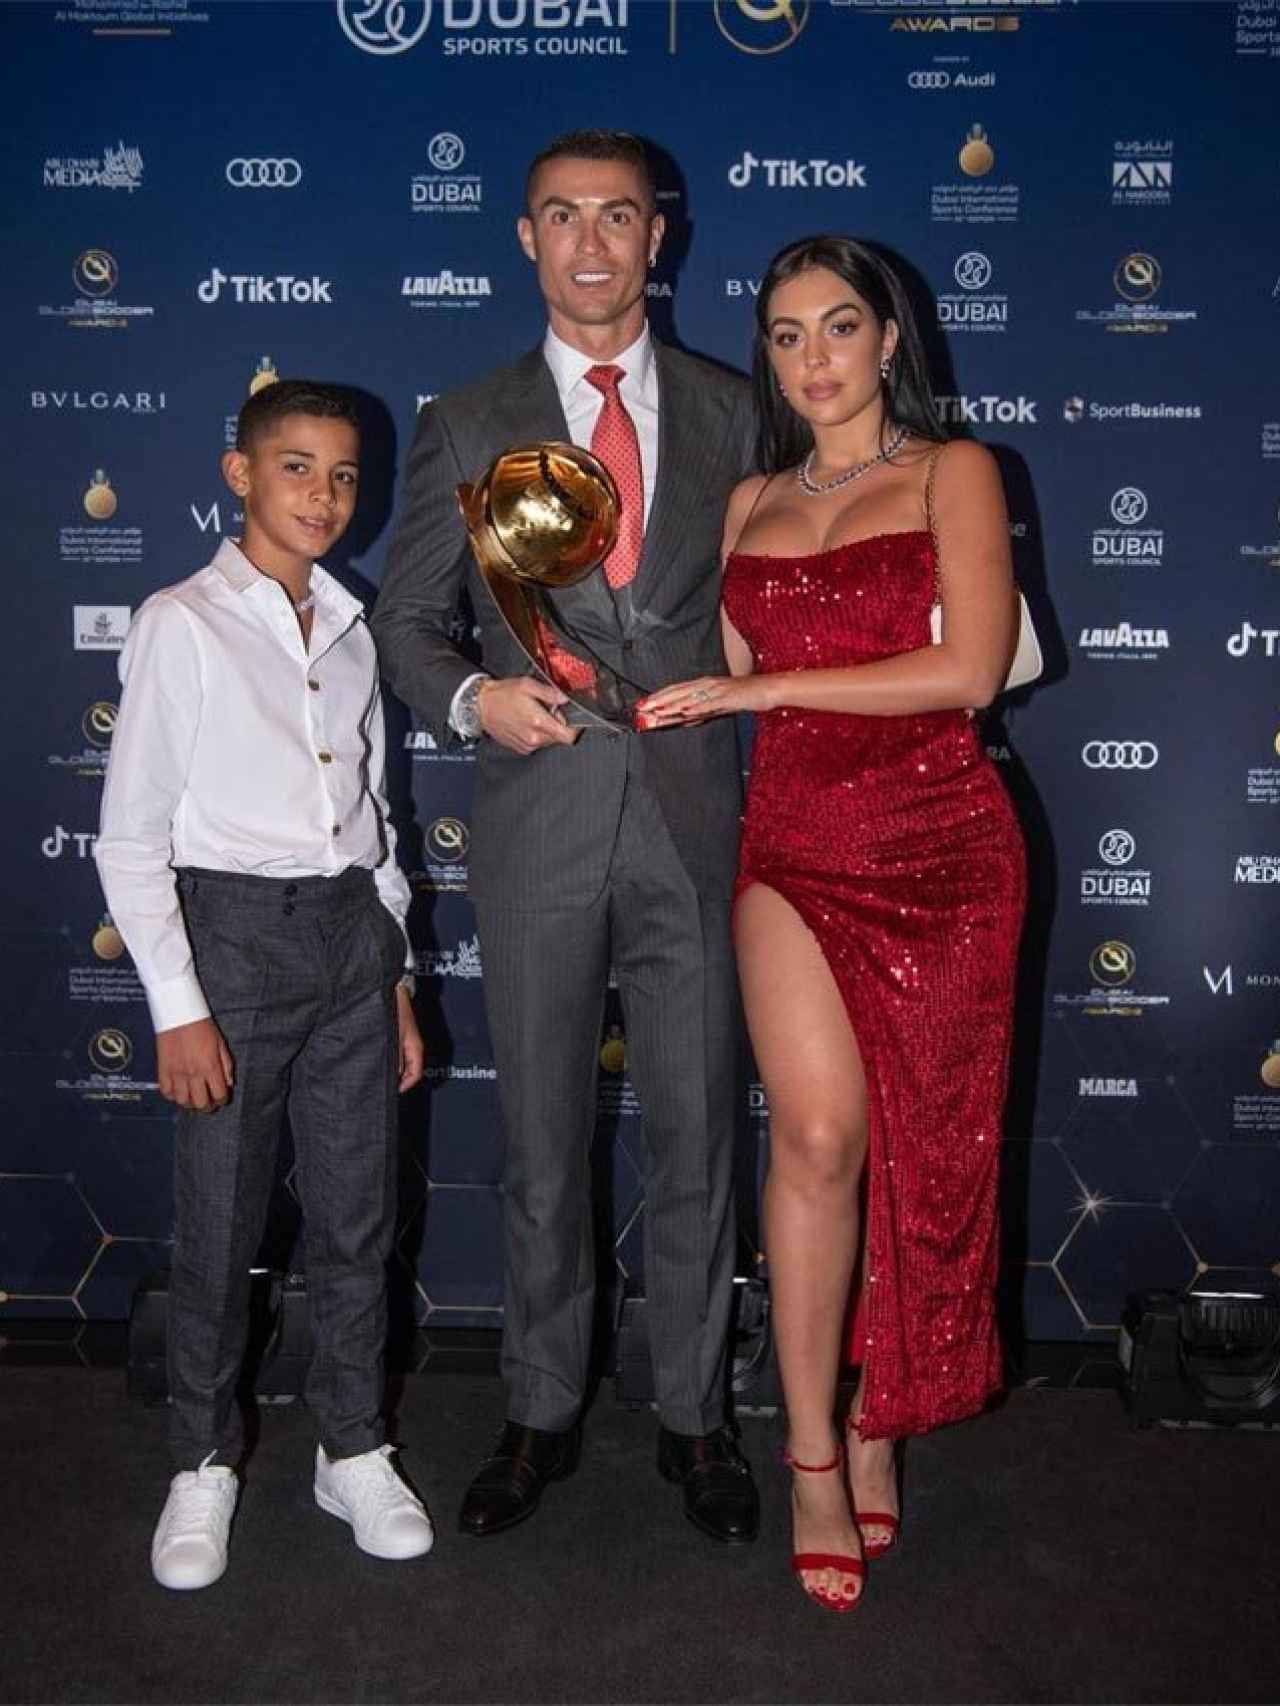 Georgina Rodríguez, Cristiano Ronaldo y Cristiano Junior en Dubái.